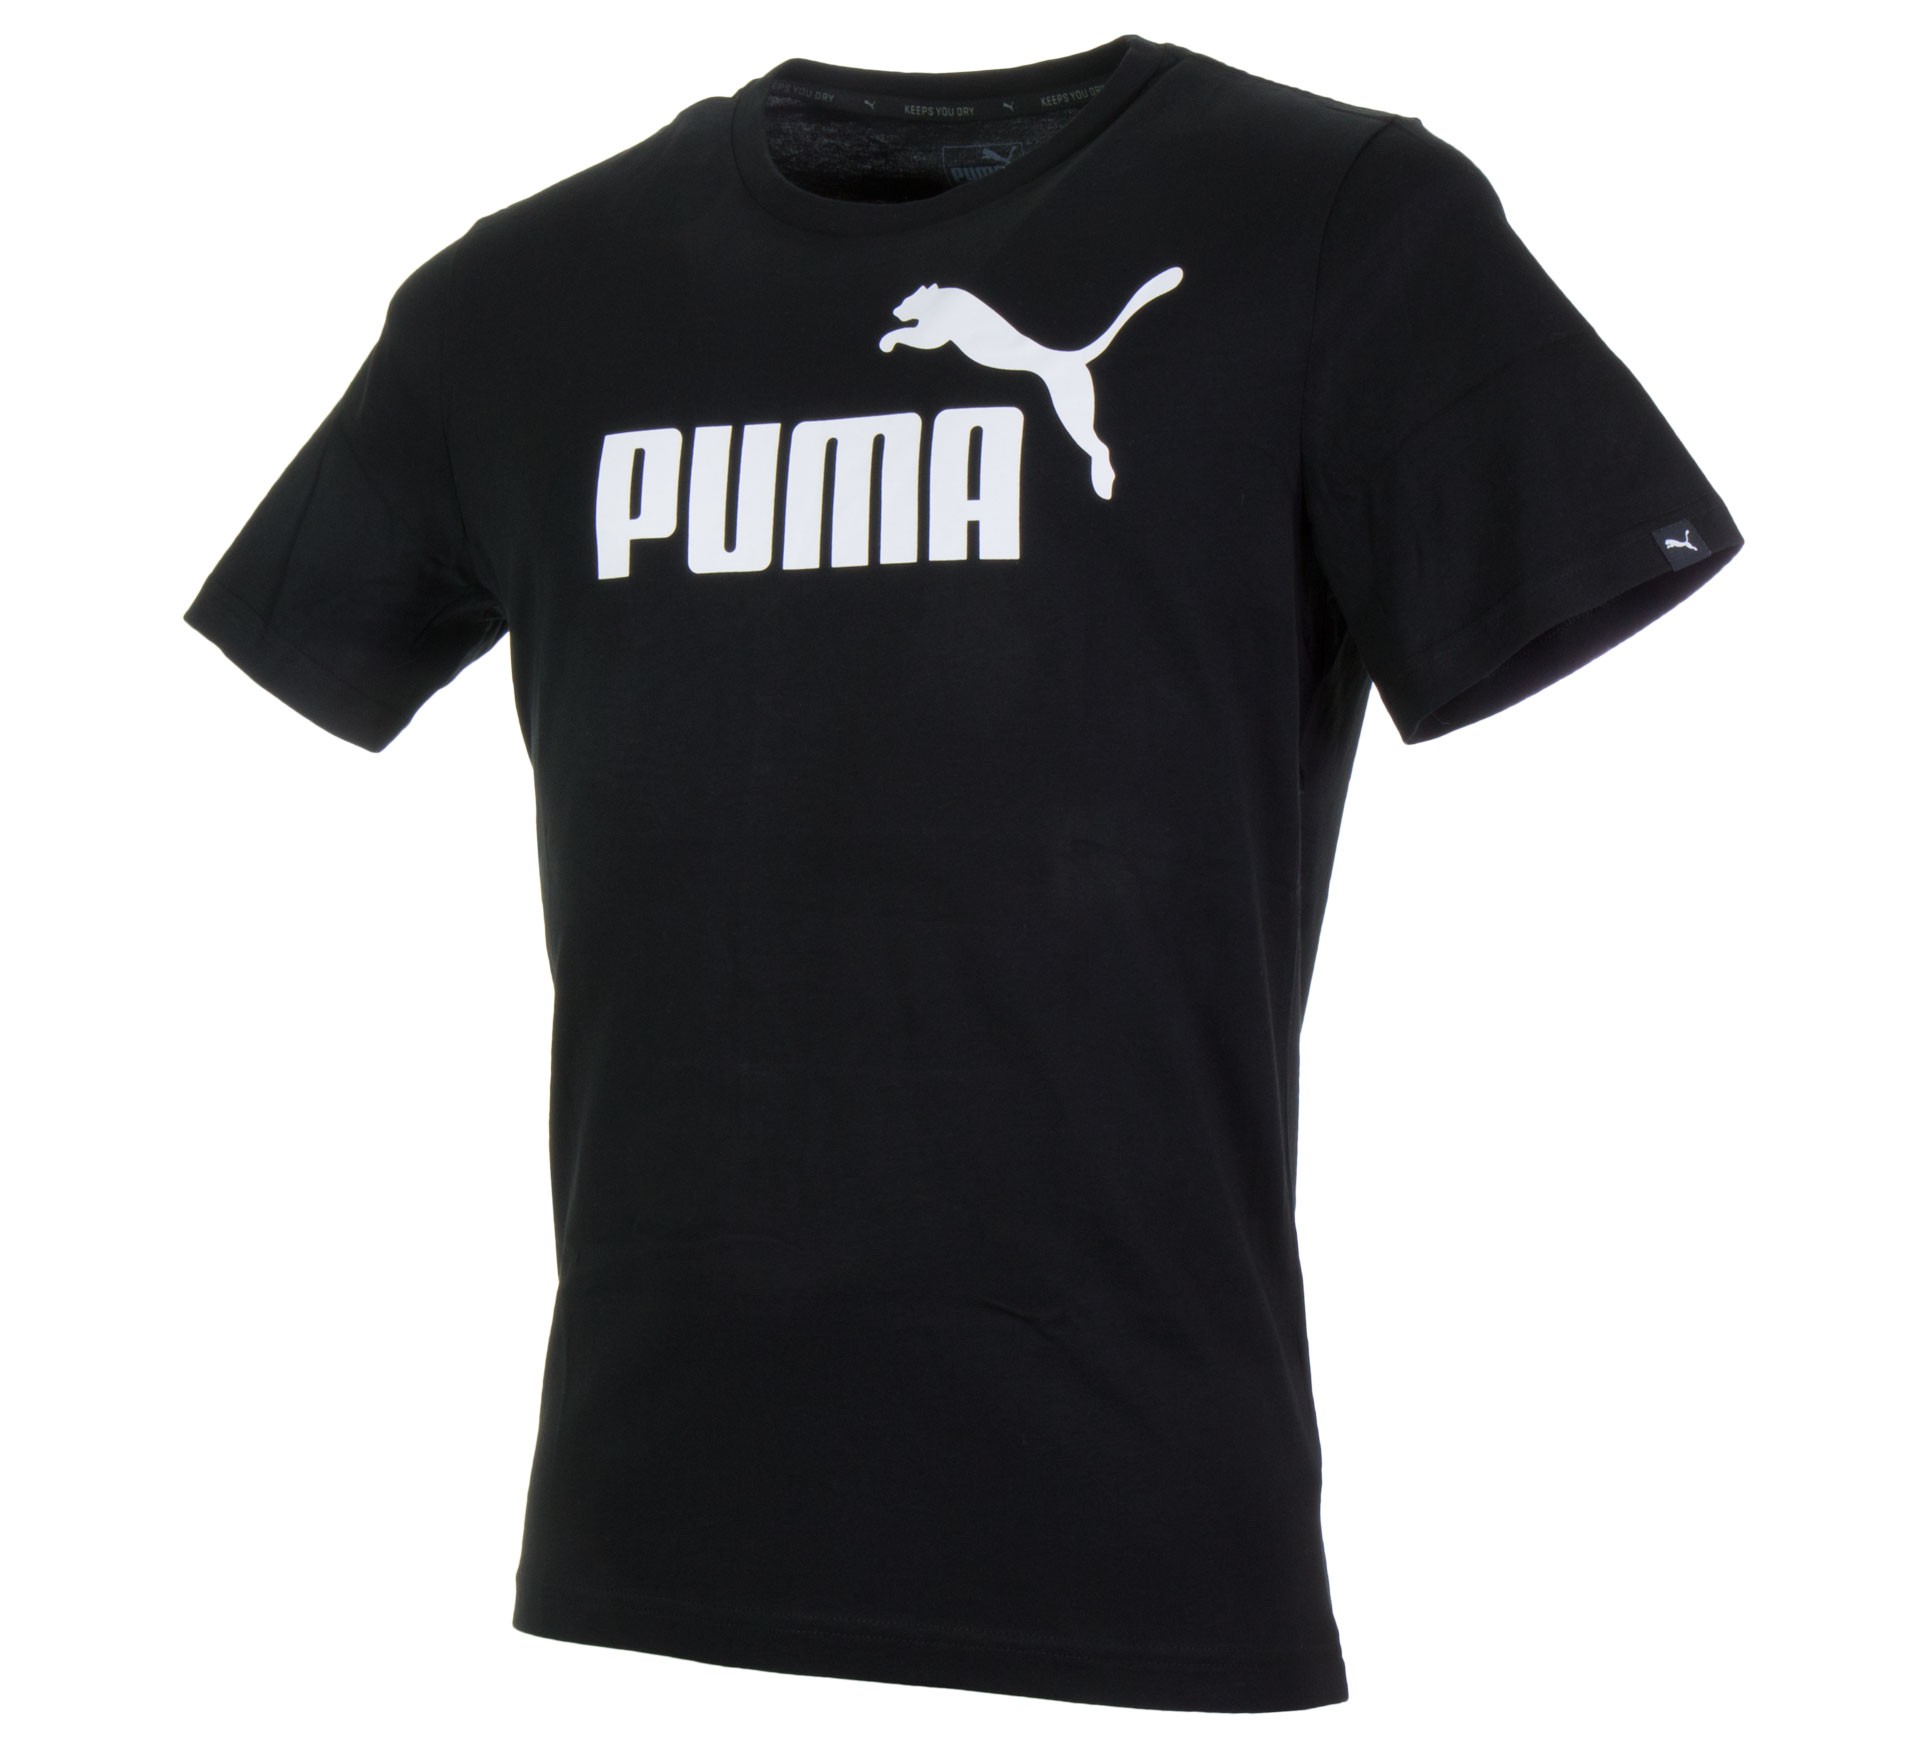 Plutosport - Puma Ess. No.1 Tee